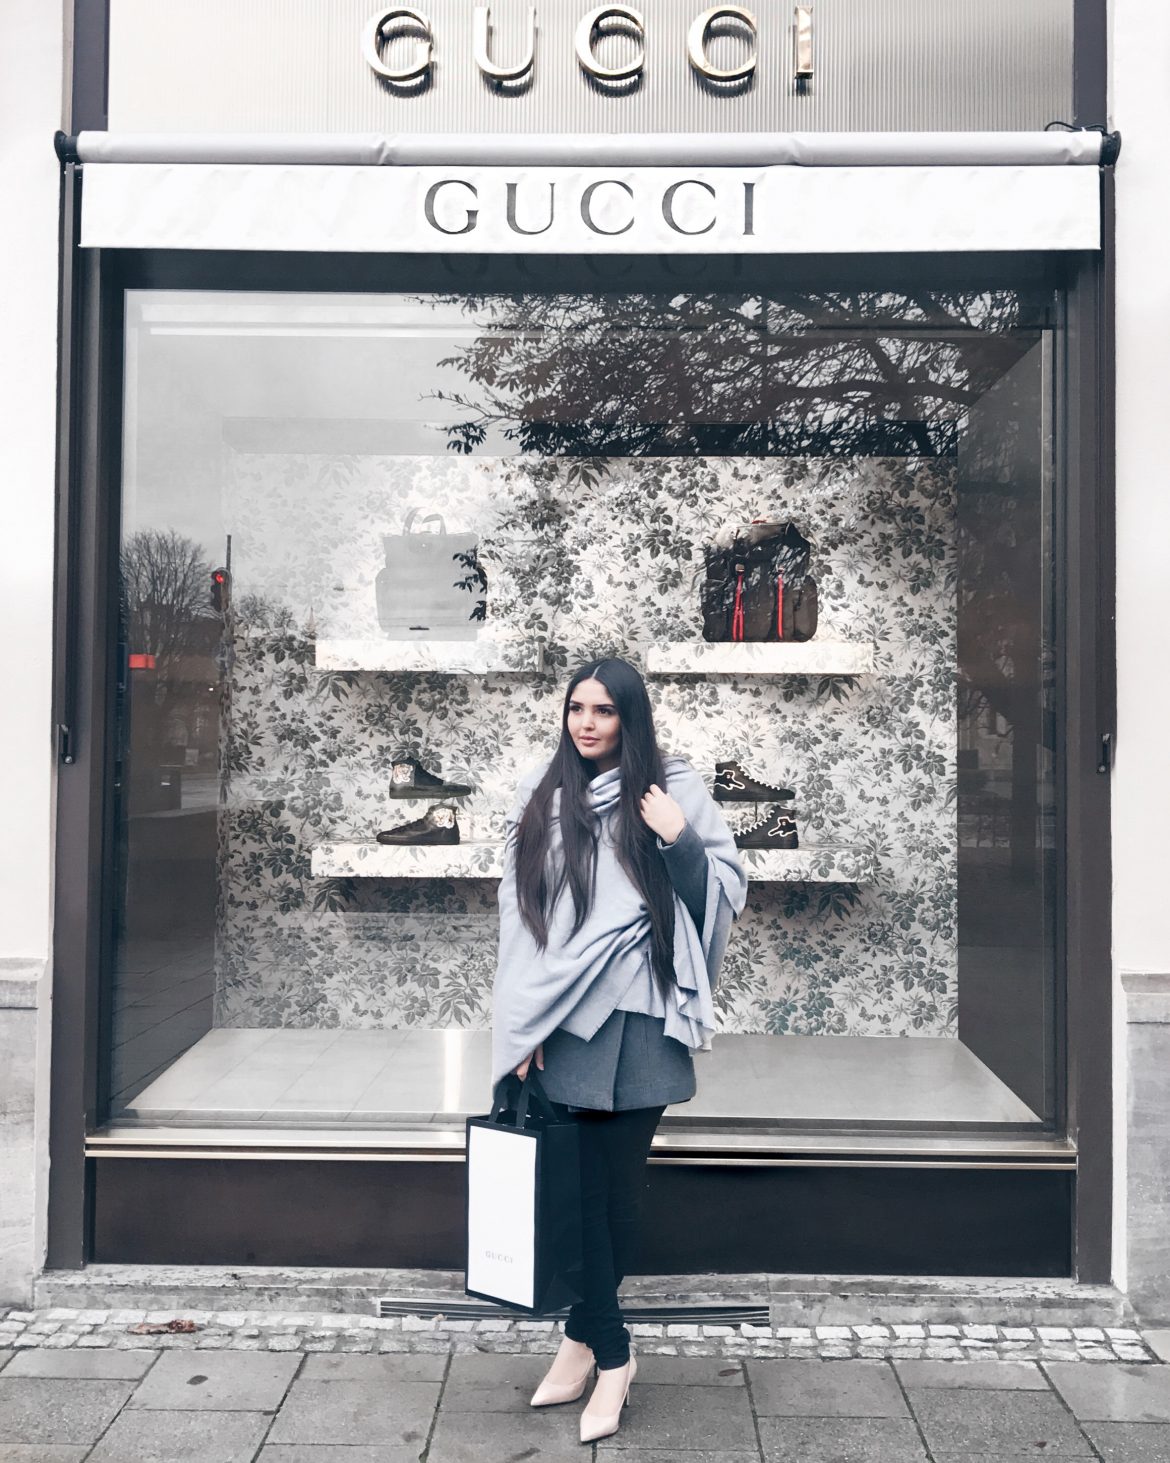 Gucci Store - Loja Gucci - Gucci Shopping - Kezia Happuck